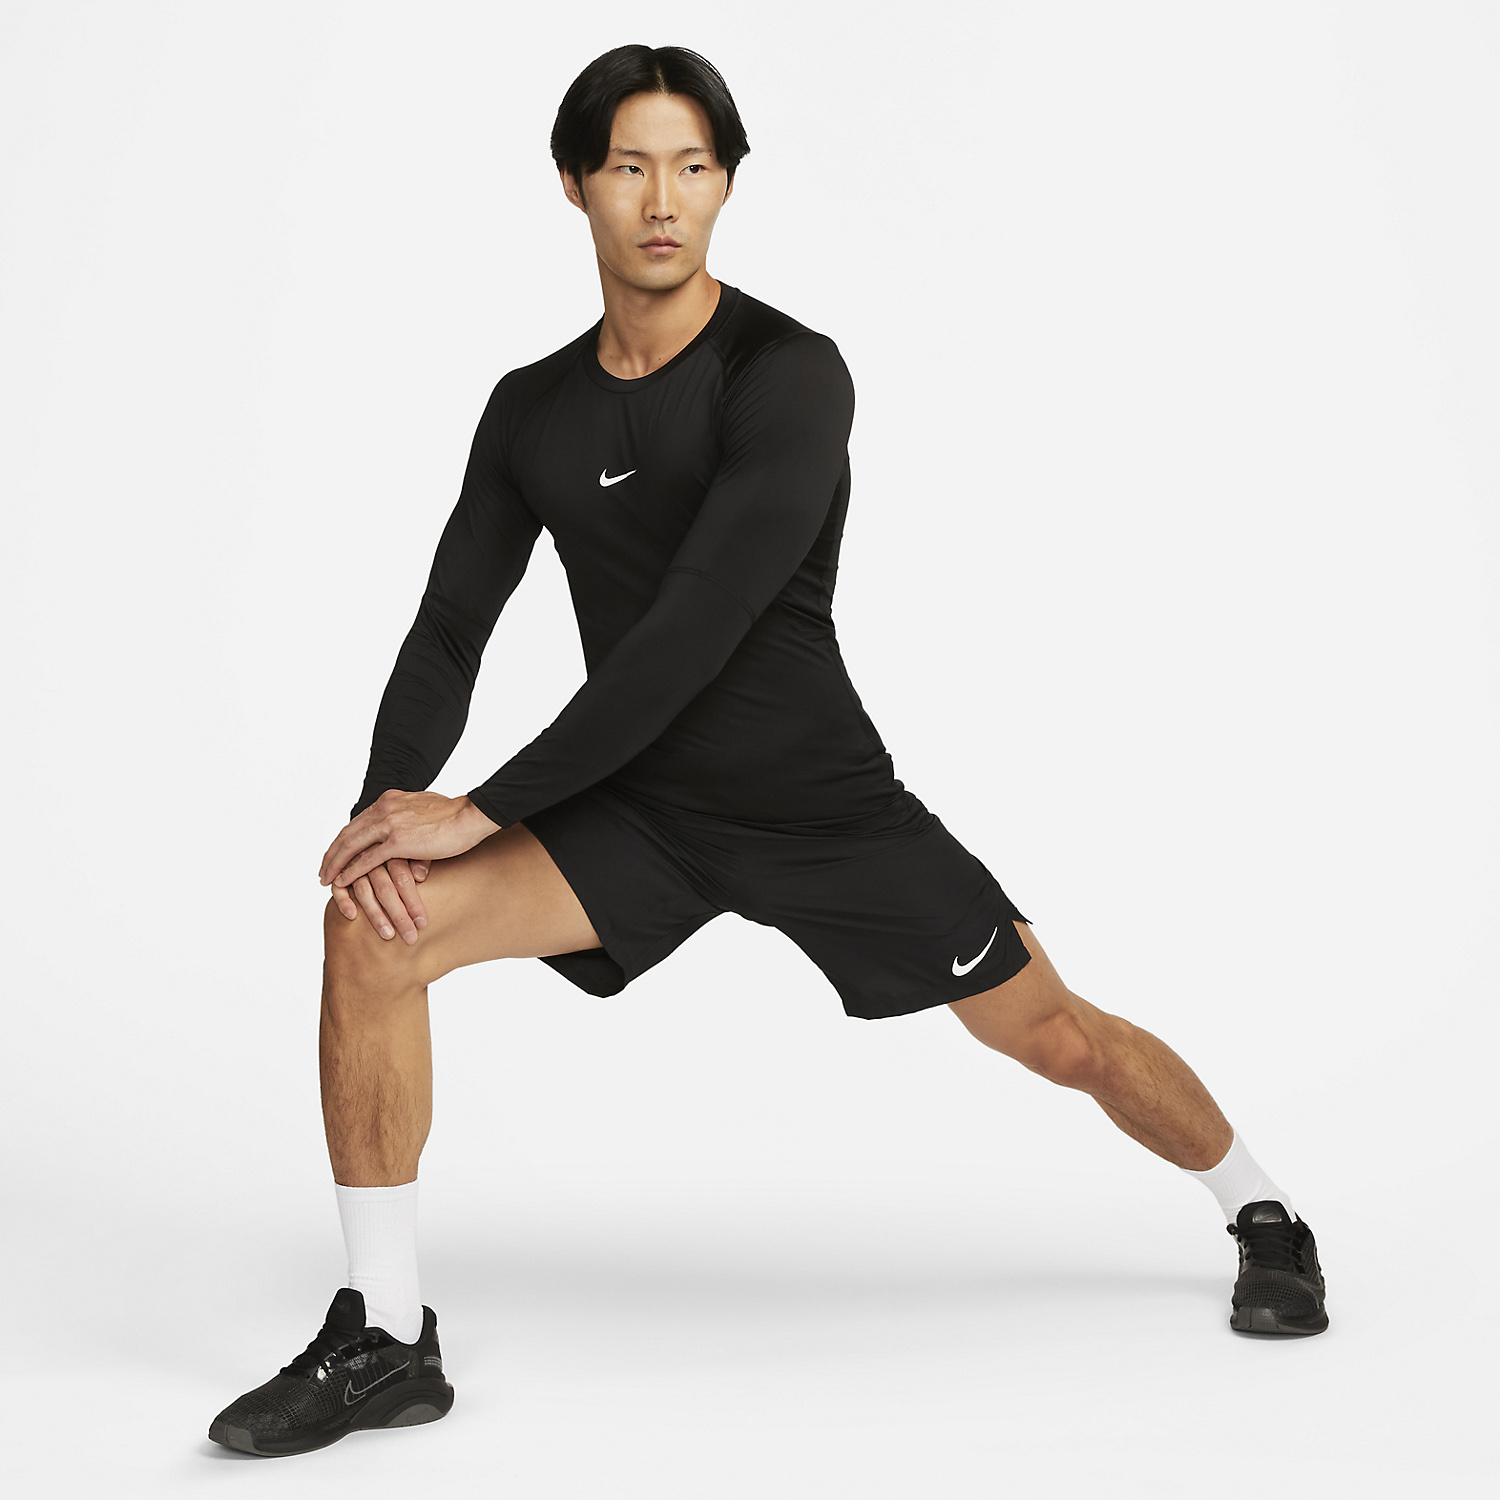 Nike Dri-FIT Pro Men's Tennis Shirt - Black/White